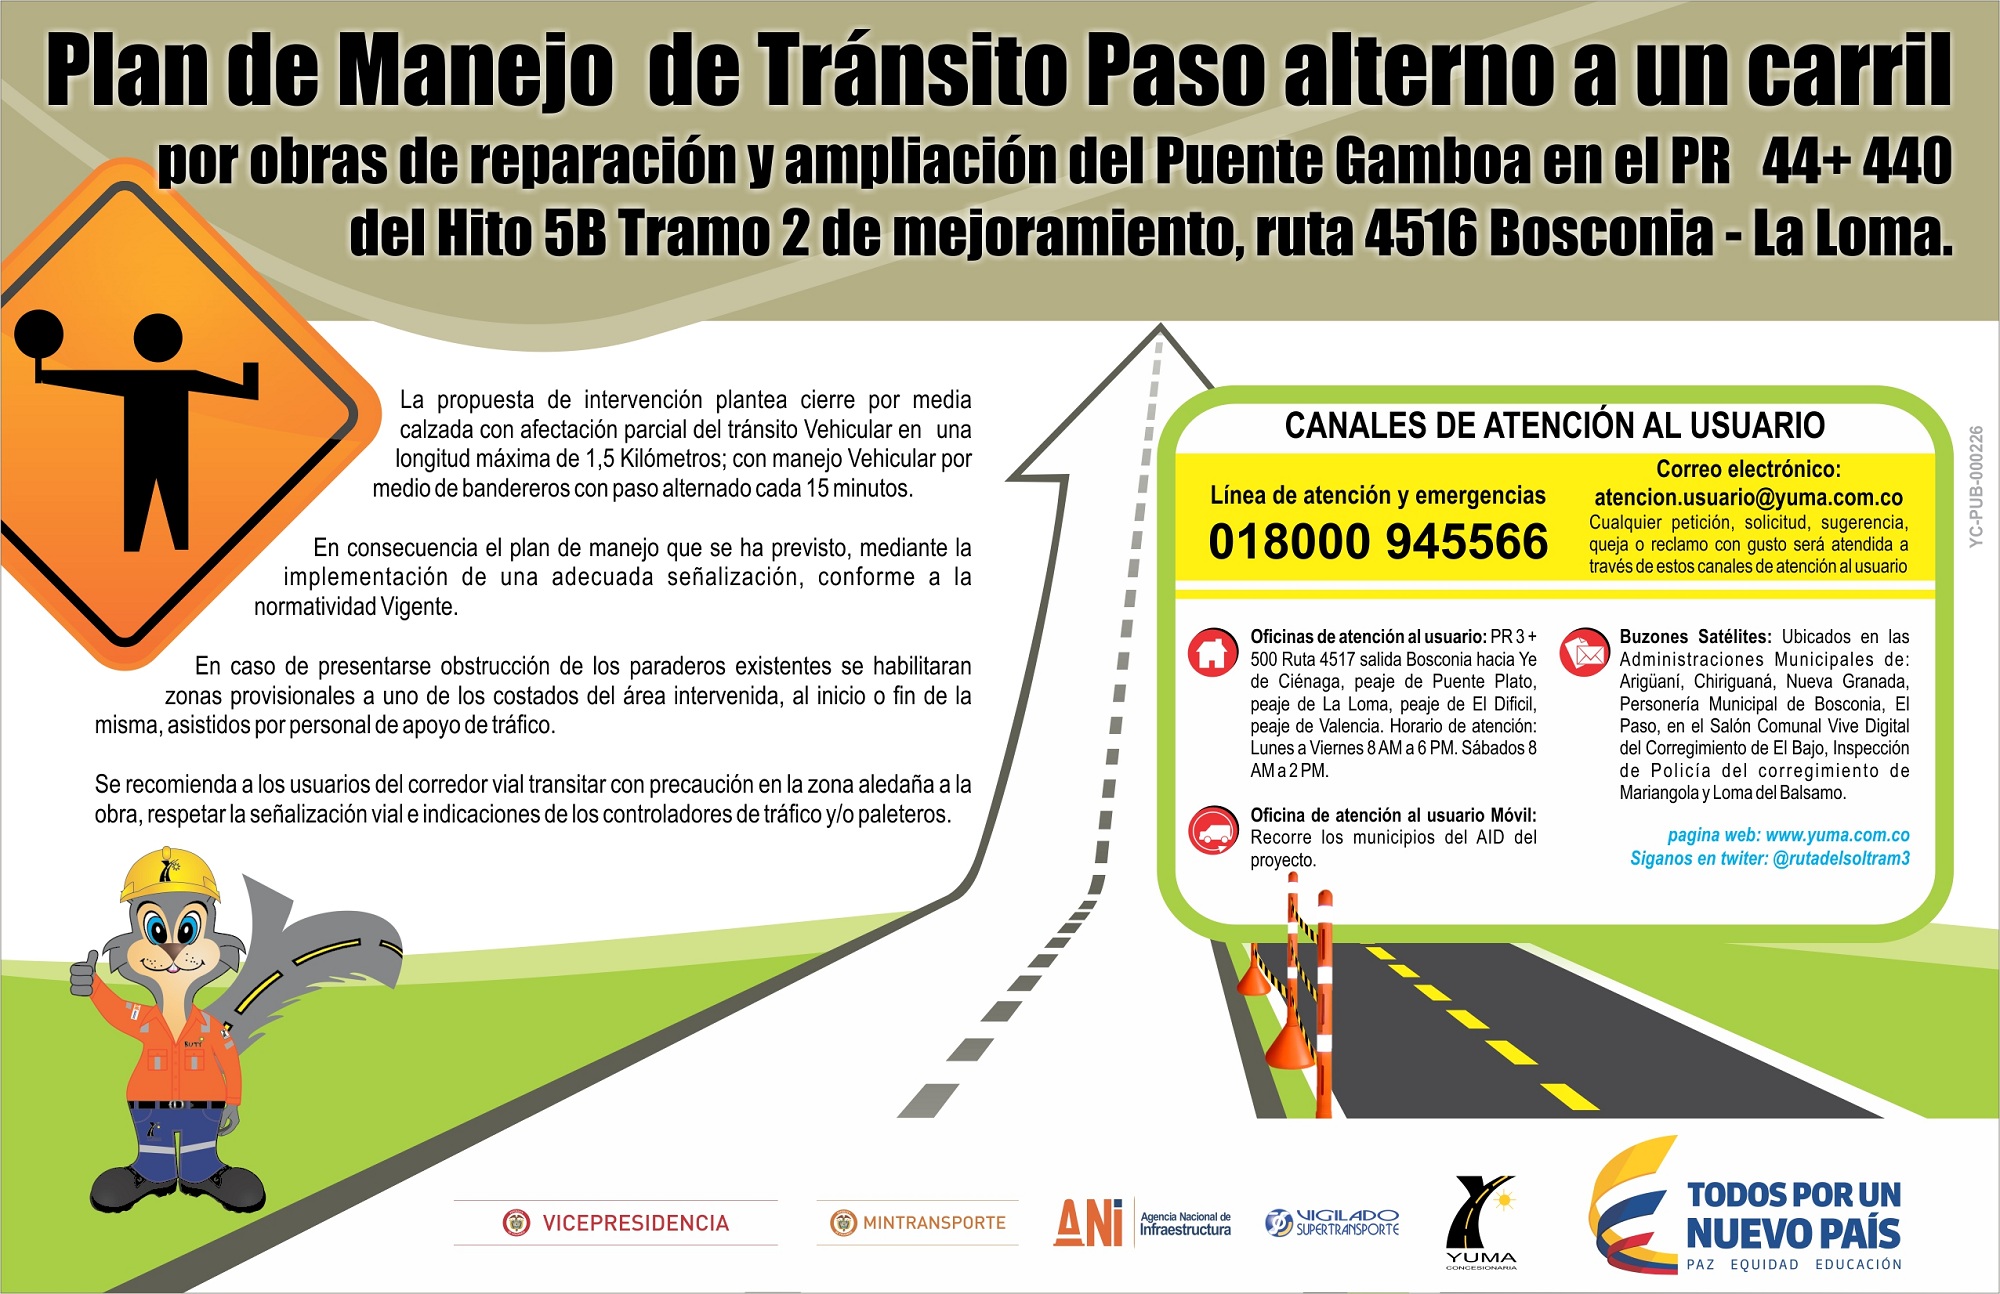 En este momento estás viendo PMT paso alterno a un carril por obras de reparación y ampliación del puente Gamboa en el PR 44+440 del hito 5B Tramo 2 de mejoramiento, ruta 4516 Bosconia – La Loma.